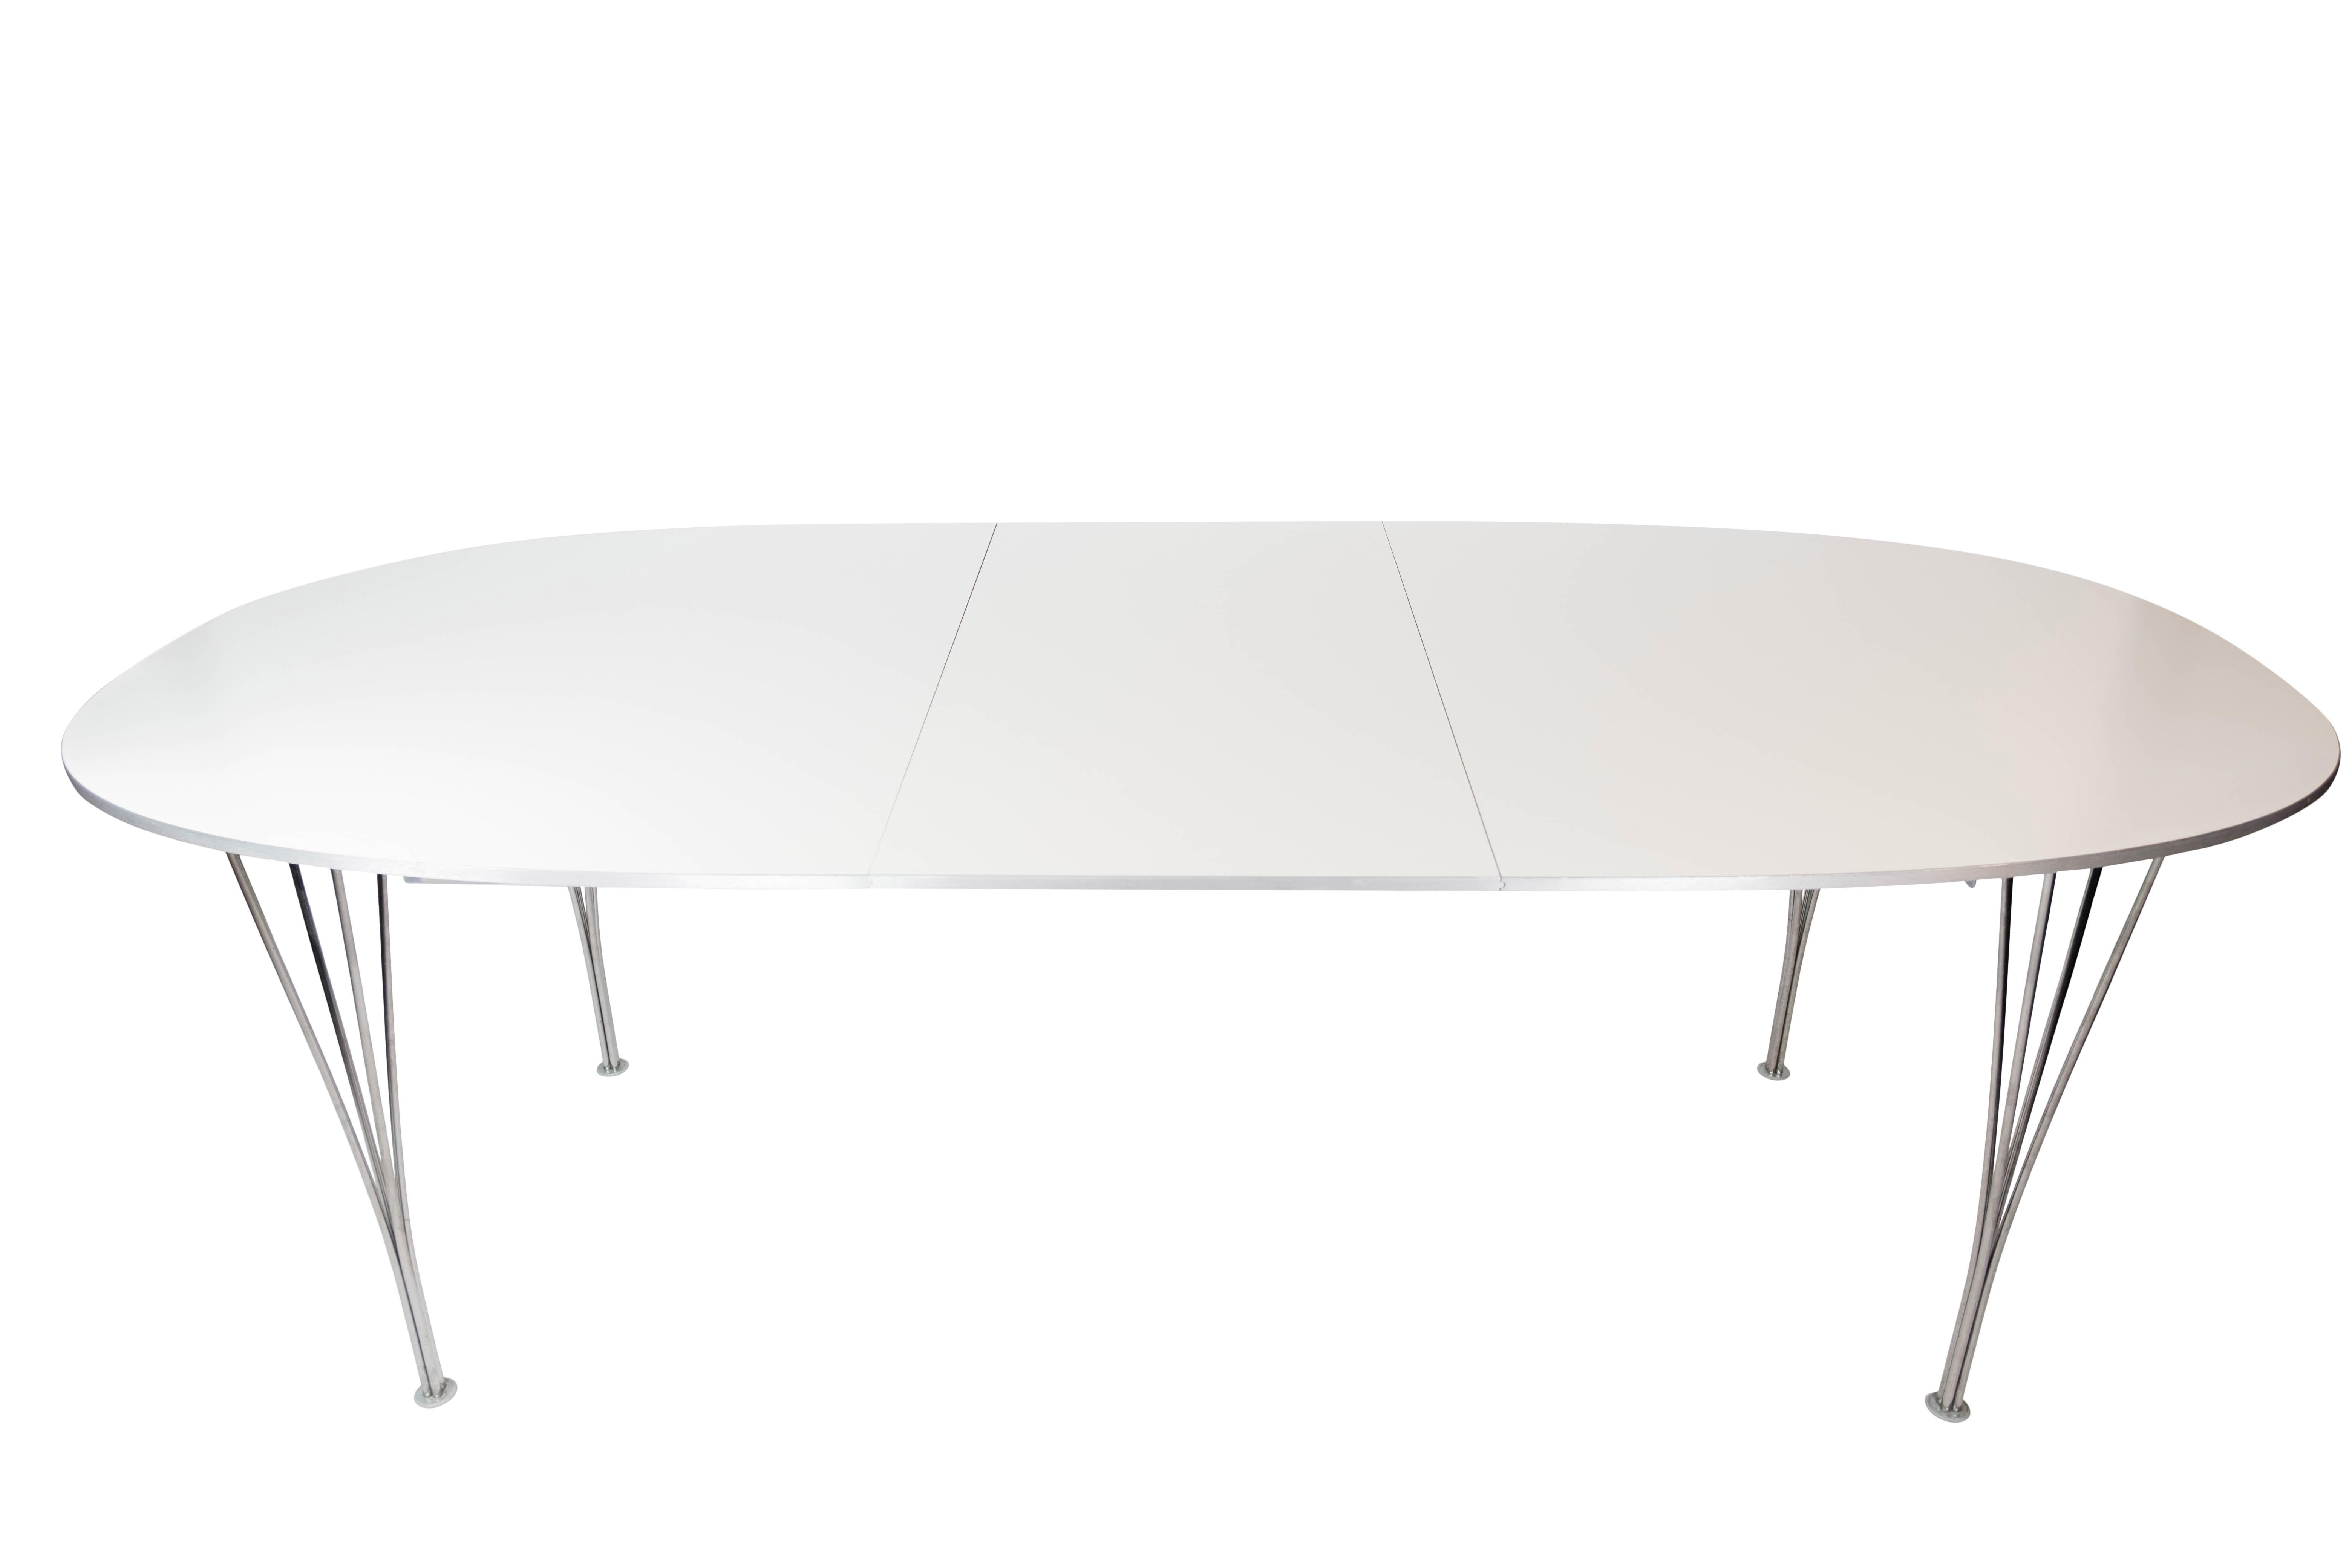 La table de salle à manger Super Ellipse, dotée d'une surface en stratifié blanc, incarne le génie de la collaboration entre Piet Hein et Arne Jacobsen, concrétisée par Fritz Hansen en 1998. Cette pièce emblématique présente un mélange harmonieux de